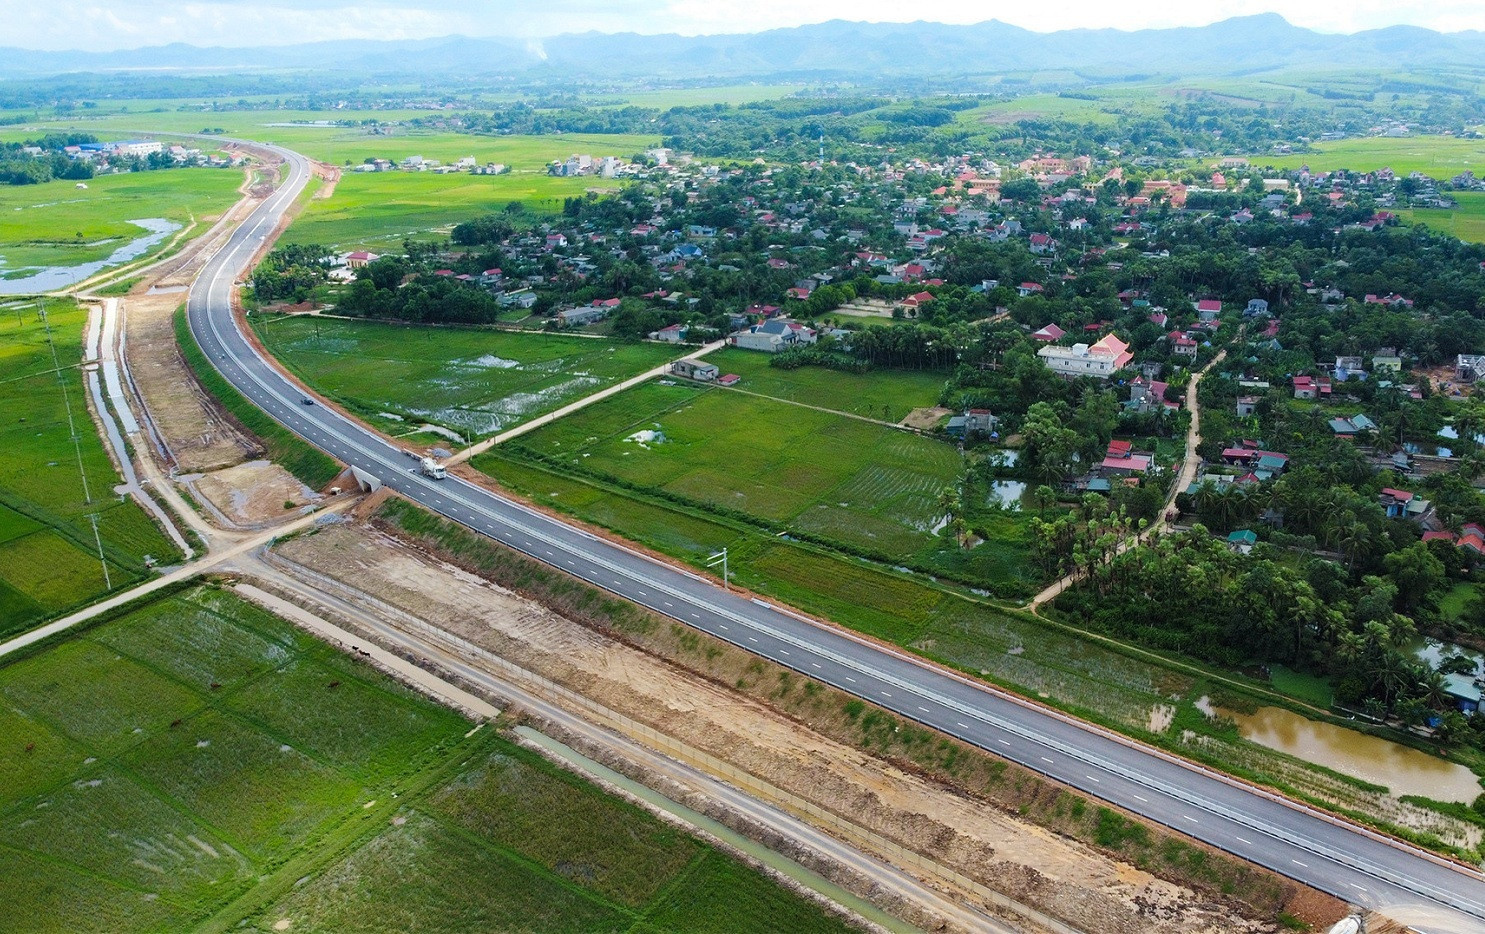 Cao tốc quốc lộ 45 - Nghi Sơn dài 43 km đi qua huyện Nông Cống, thị xã Nghi Sơn (Thanh Hóa). (Ảnh: Vietnamnet)